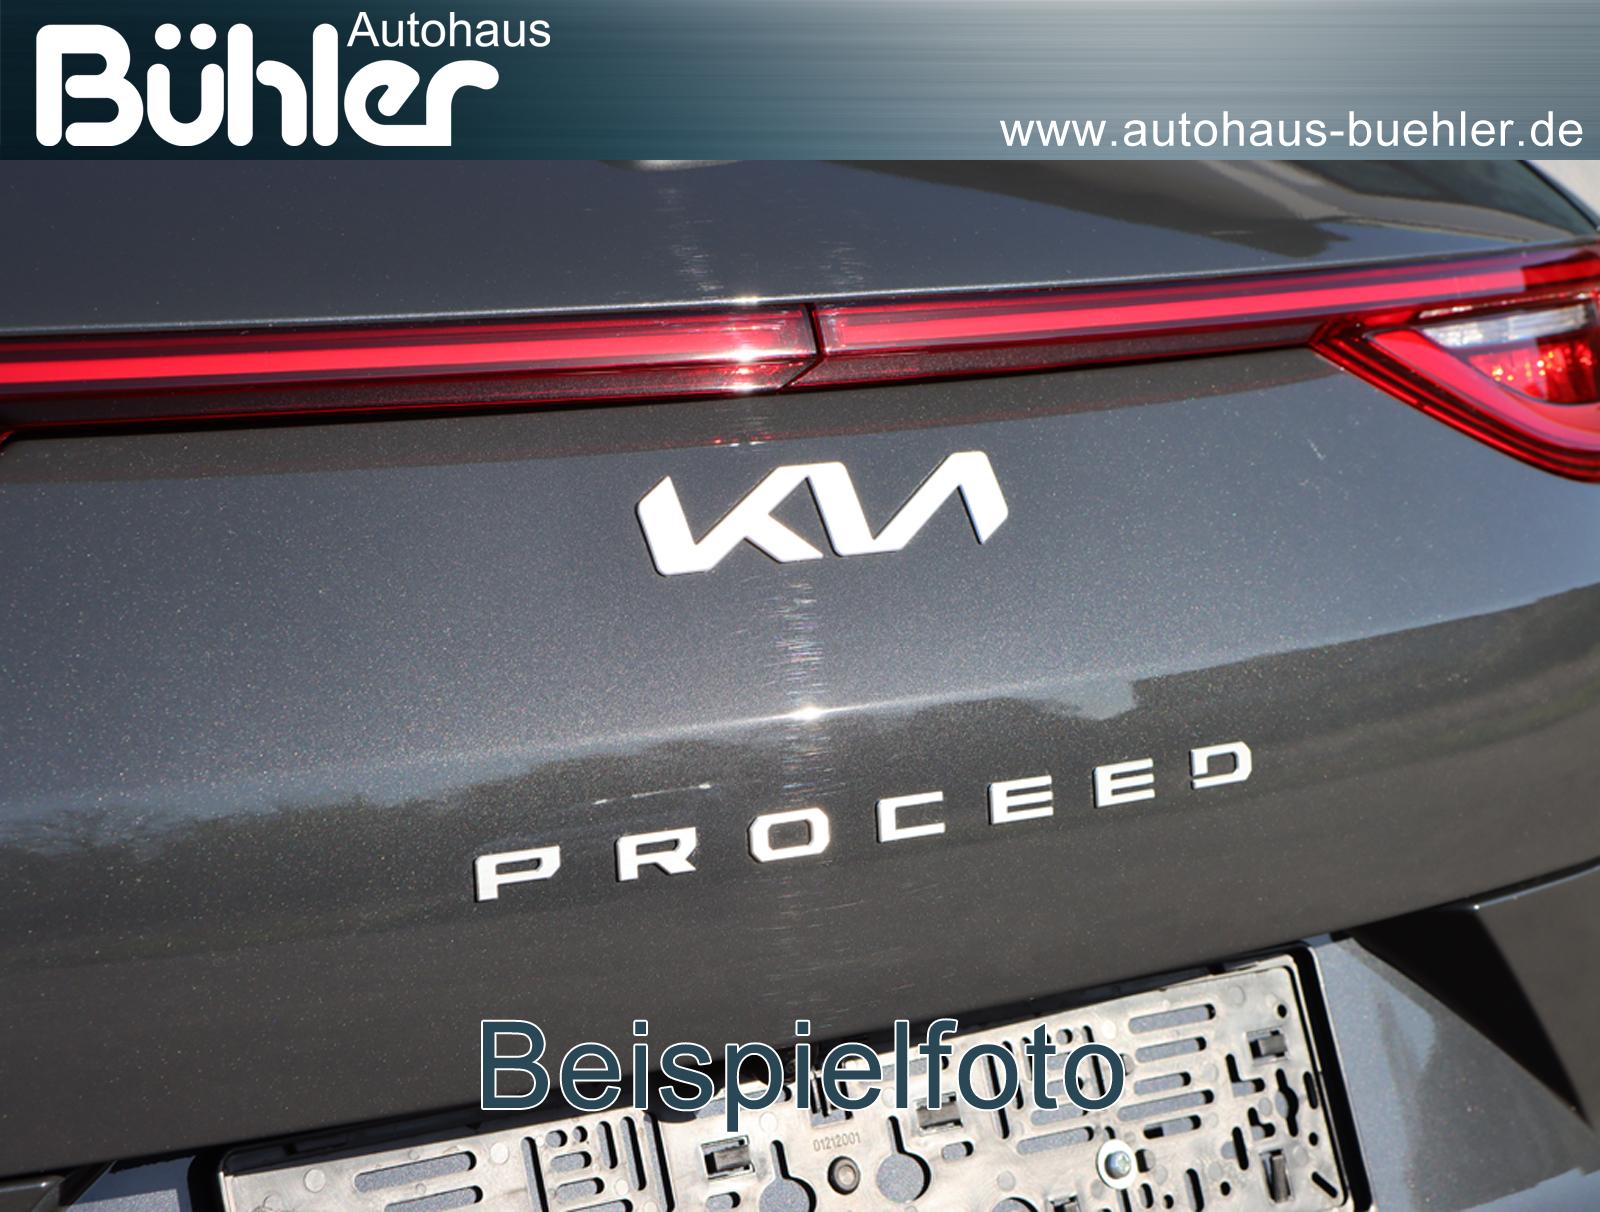 Kia ProCeed 1.6 T-GDI DCT Automatik GT - Pentametall Metallic